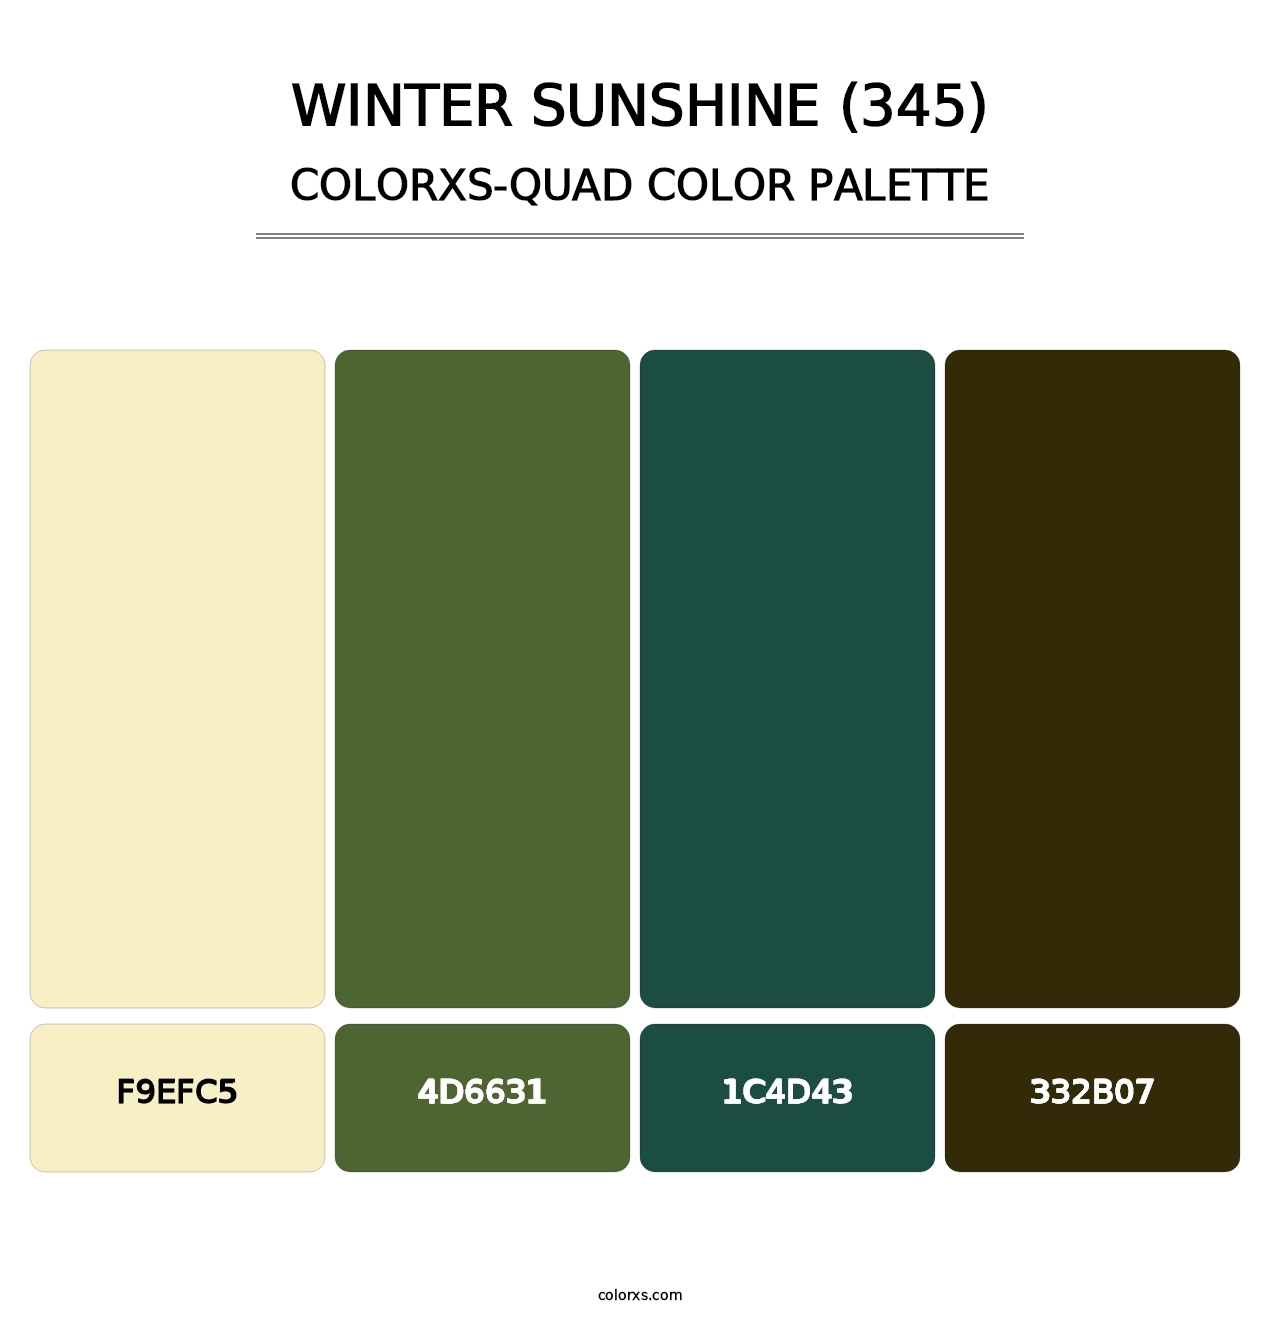 Winter Sunshine (345) - Colorxs Quad Palette